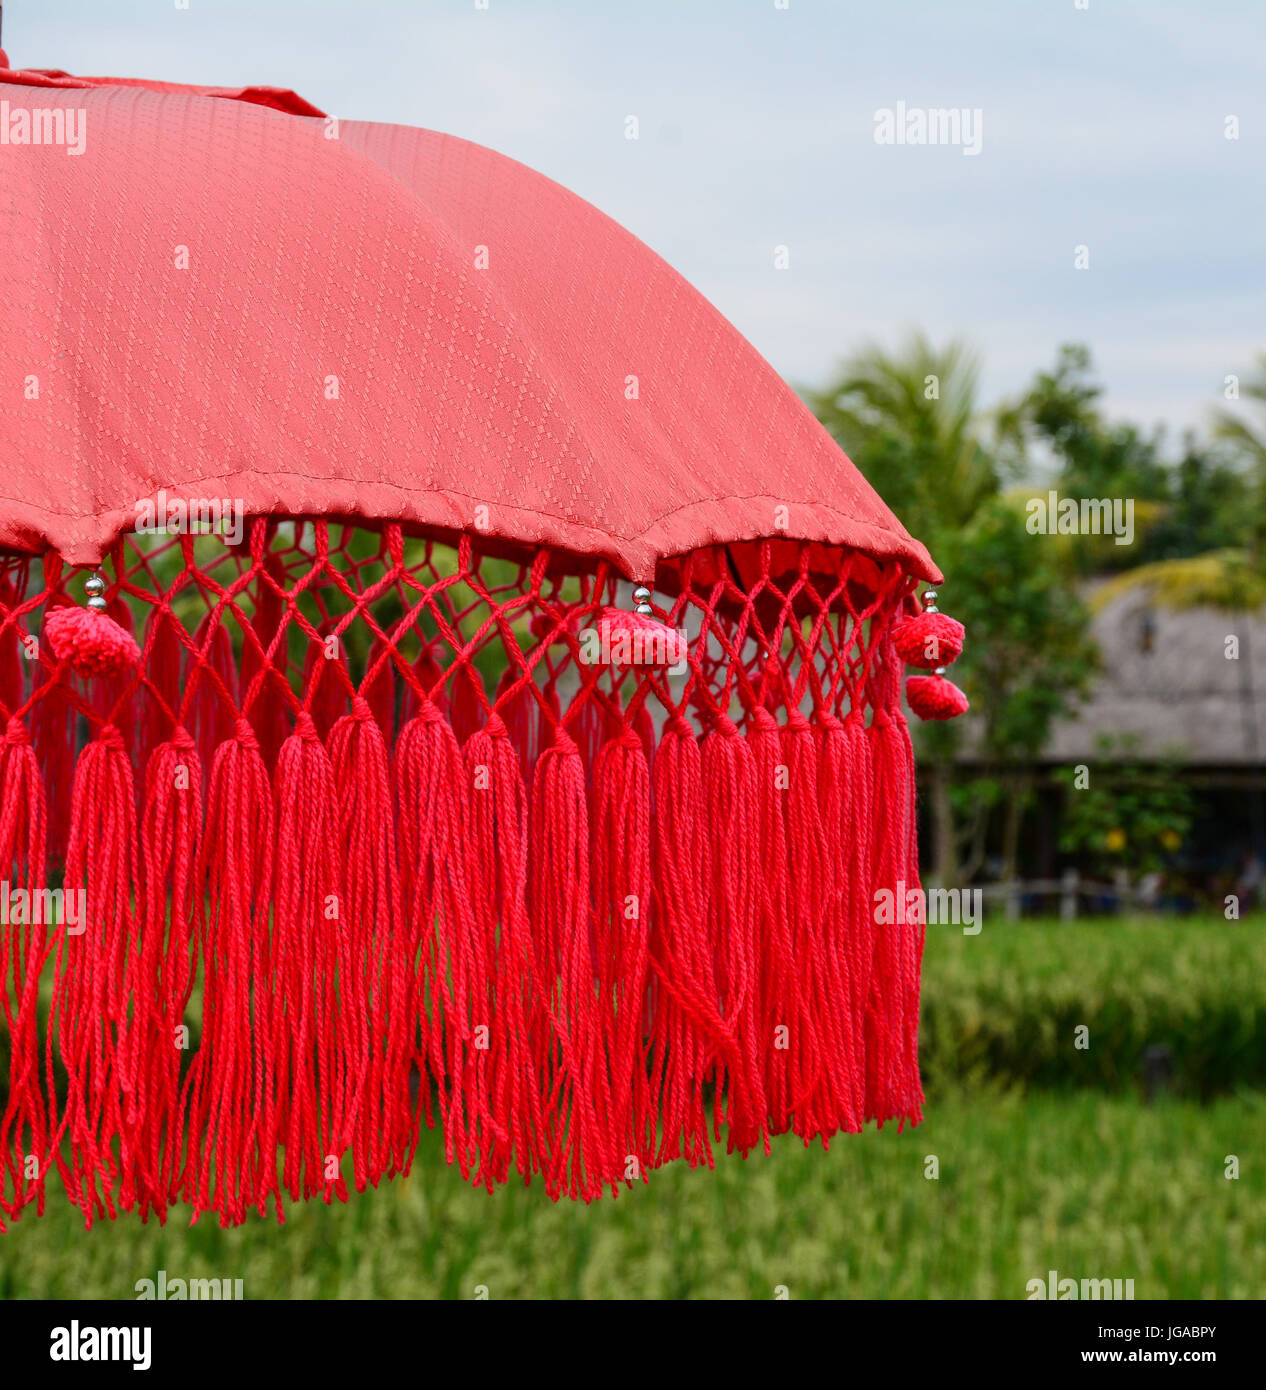 Balinesische roten Regenschirm auf dem Reisfeld in Bali, Indonesien. Hautnah. Stockfoto